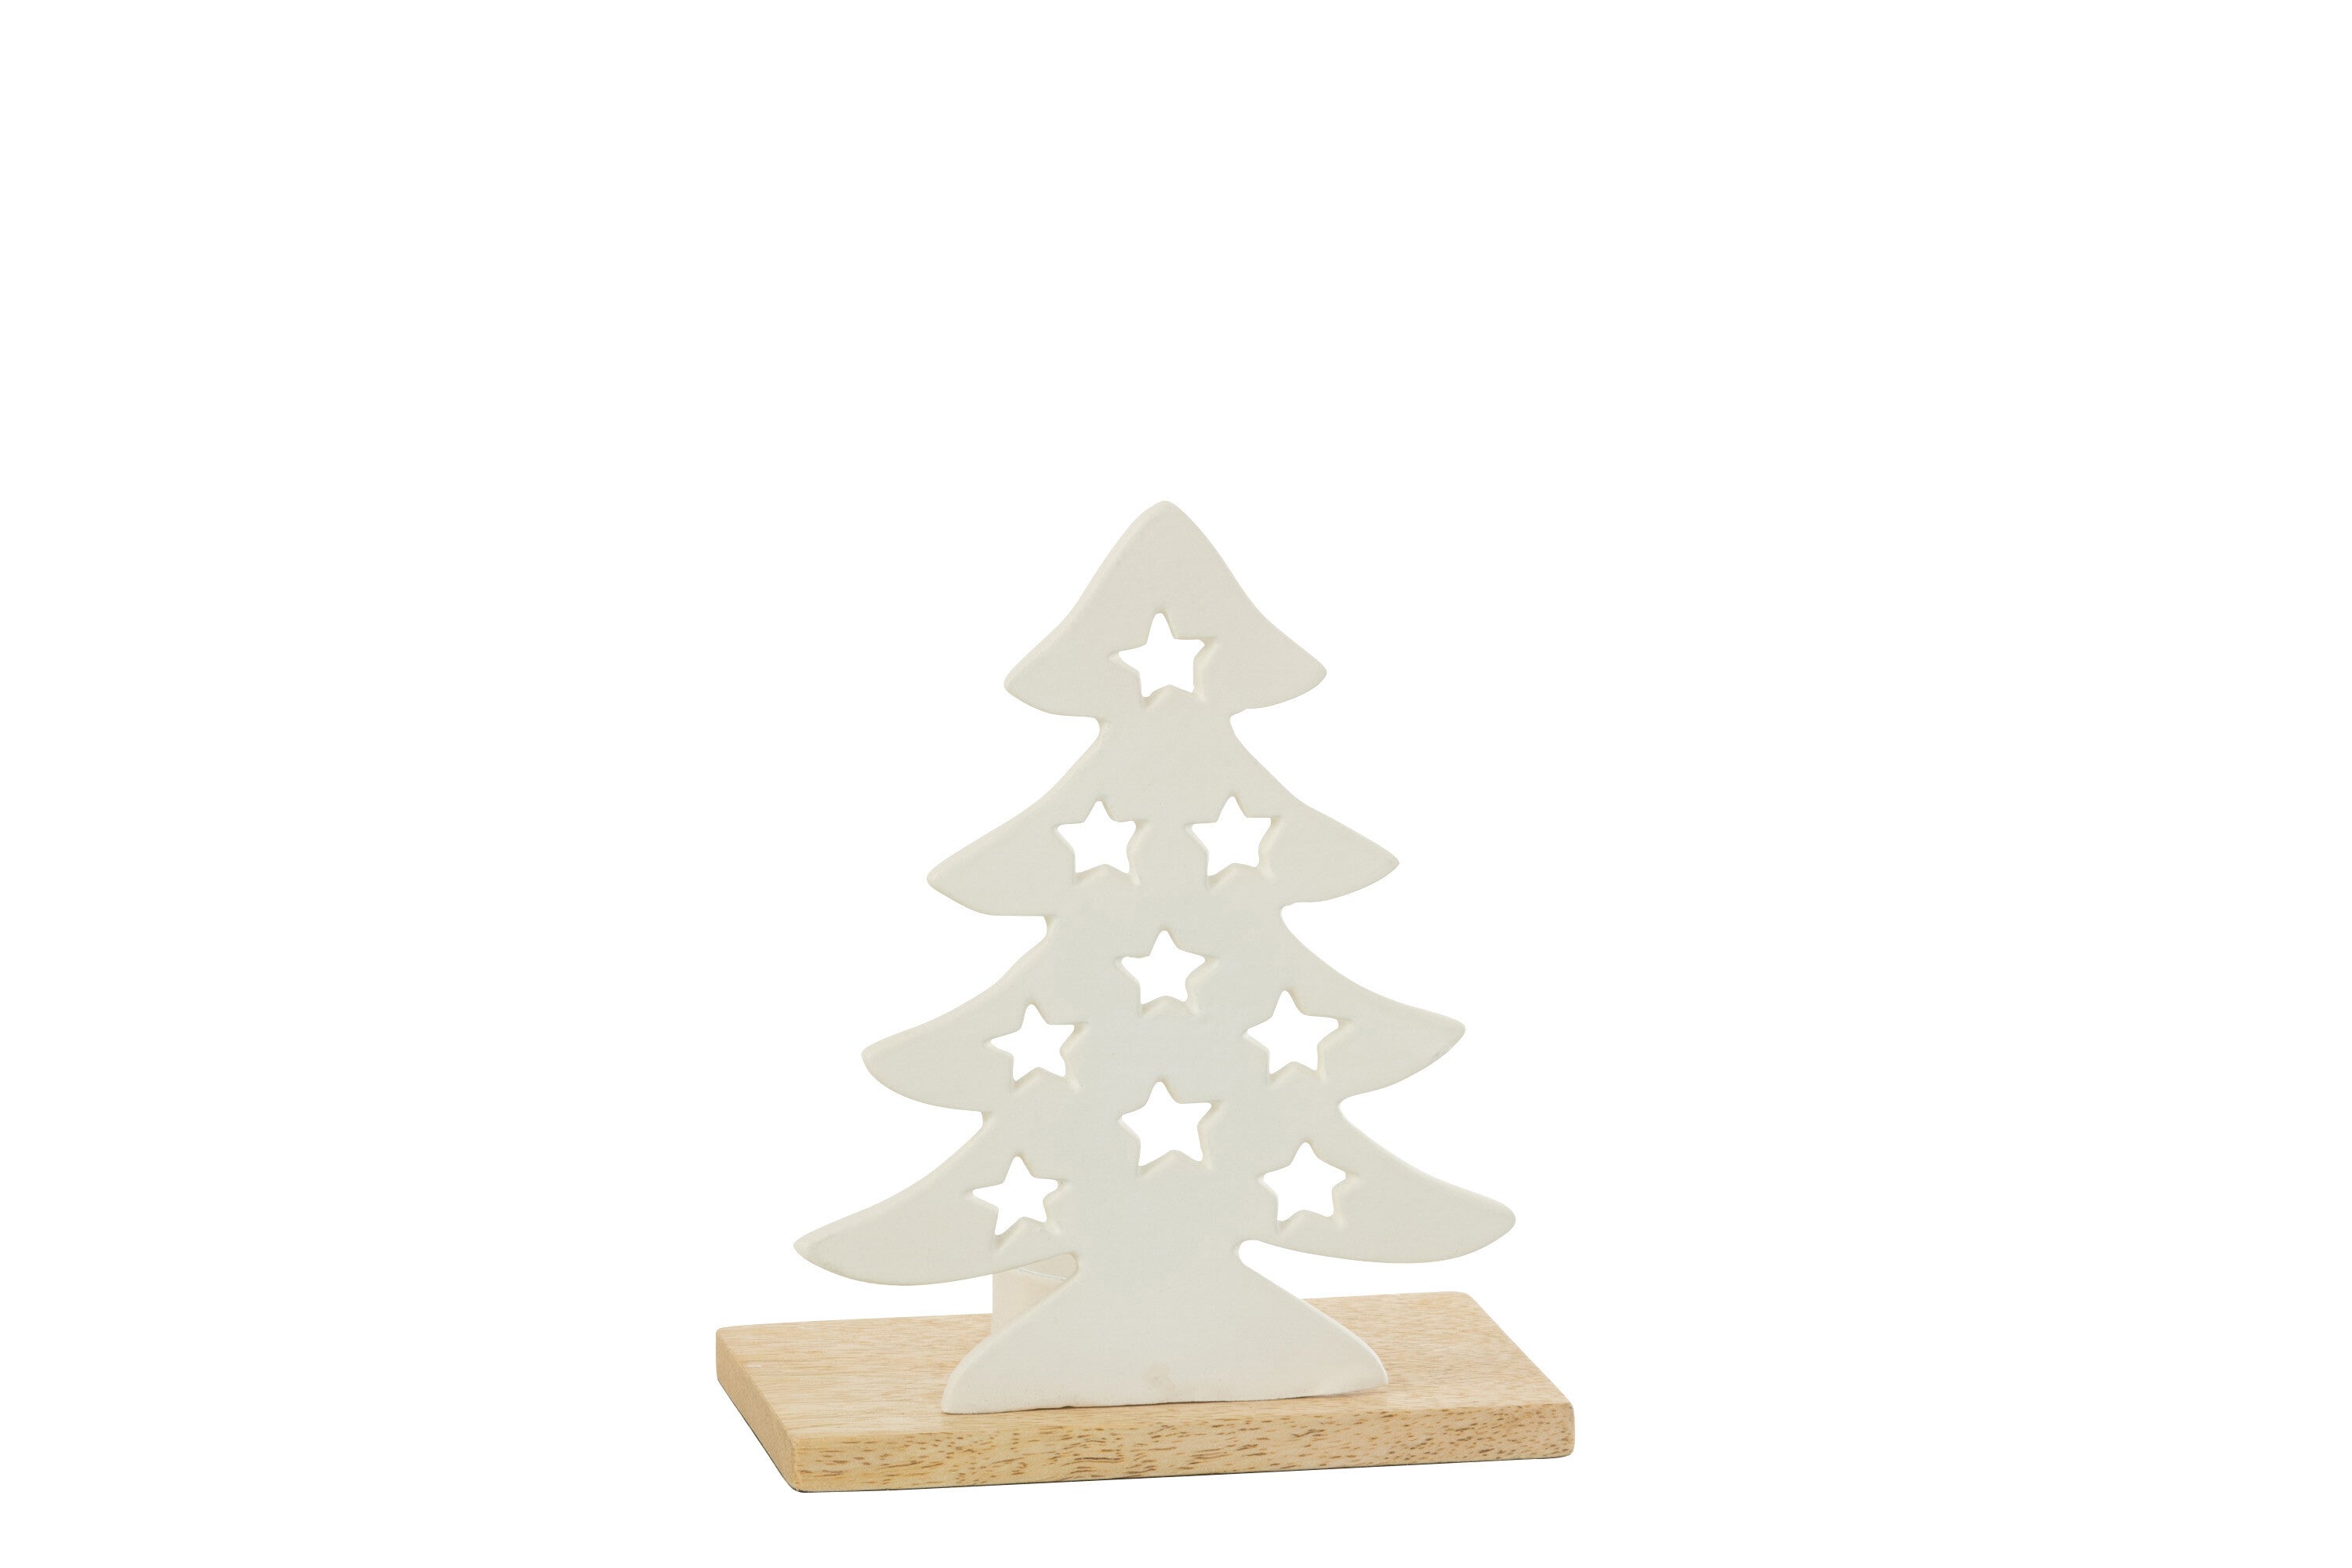 Tlh Christmas Tree Alu/Ht White/Nat S - (36259)